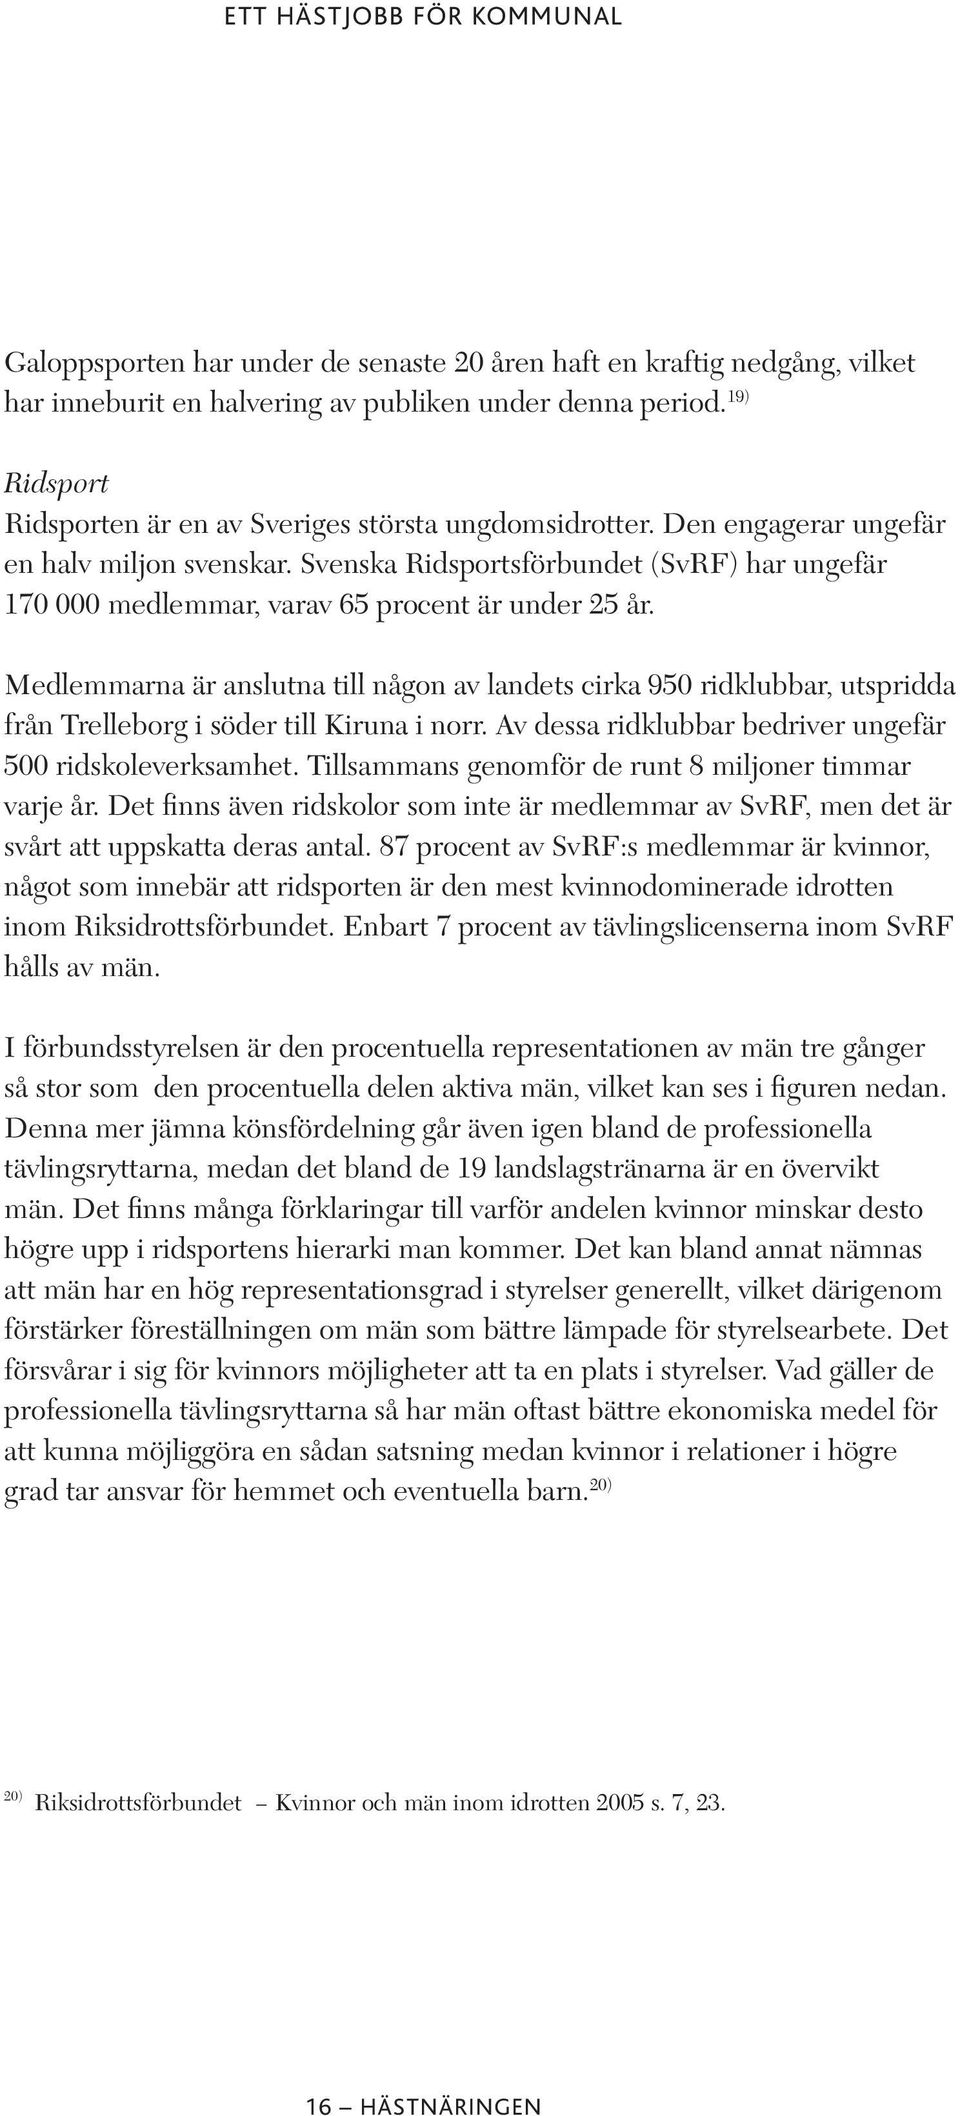 Medlemmarna är anslutna till någon av landets cirka 950 ridklubbar, utspridda från Trelleborg i söder till Kiruna i norr. Av dessa ridklubbar bedriver ungefär 500 ridskoleverksamhet.